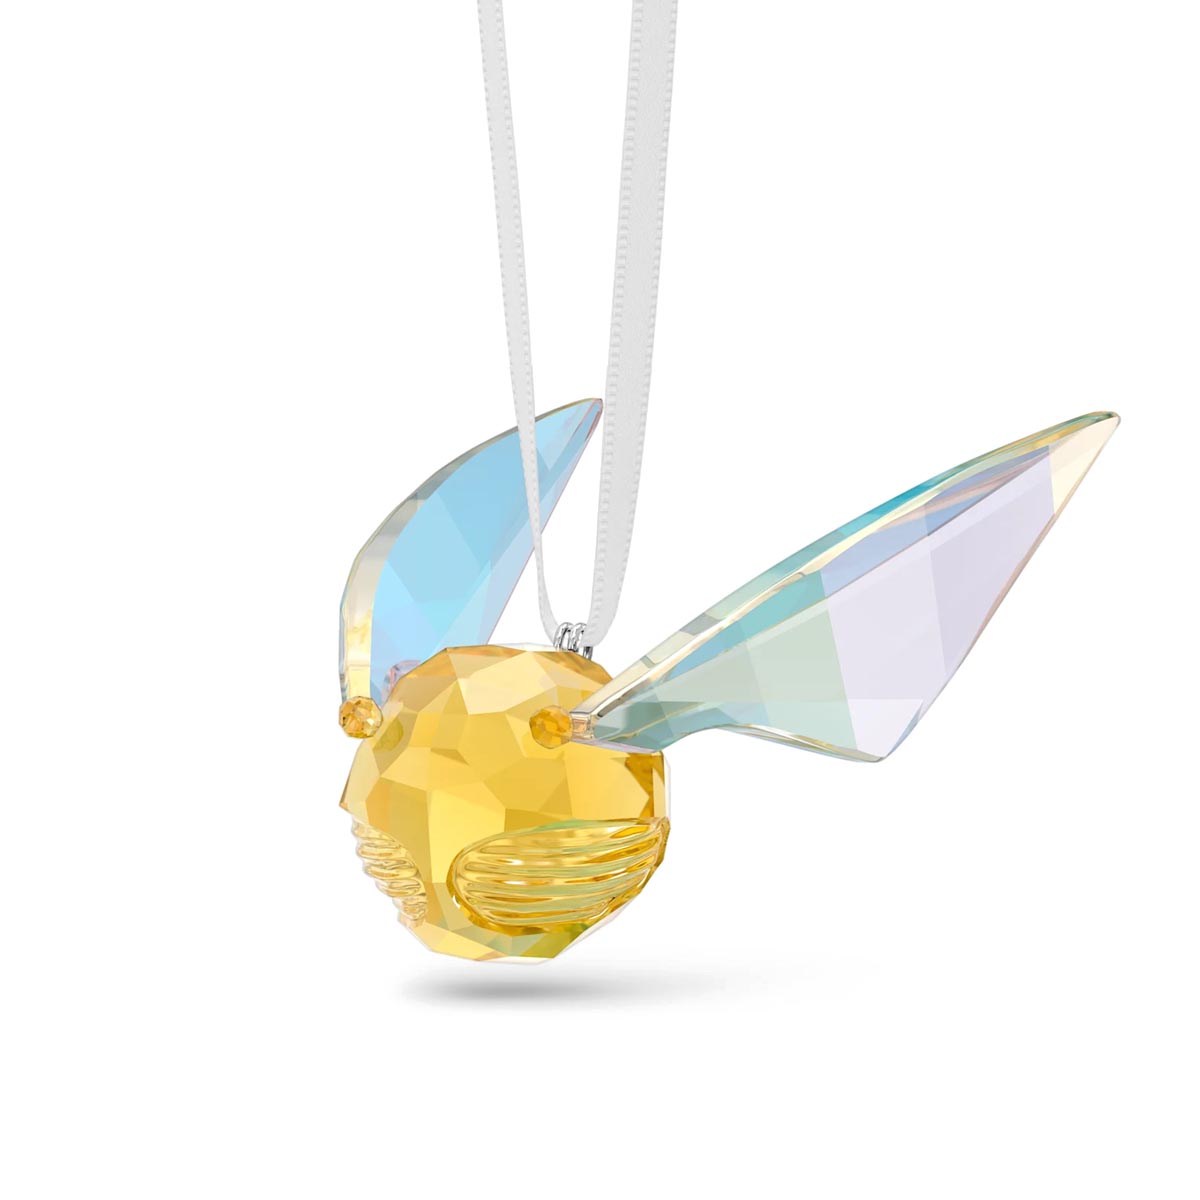 Swarovski Crystal Harry Potter Golden Snitch Ornament